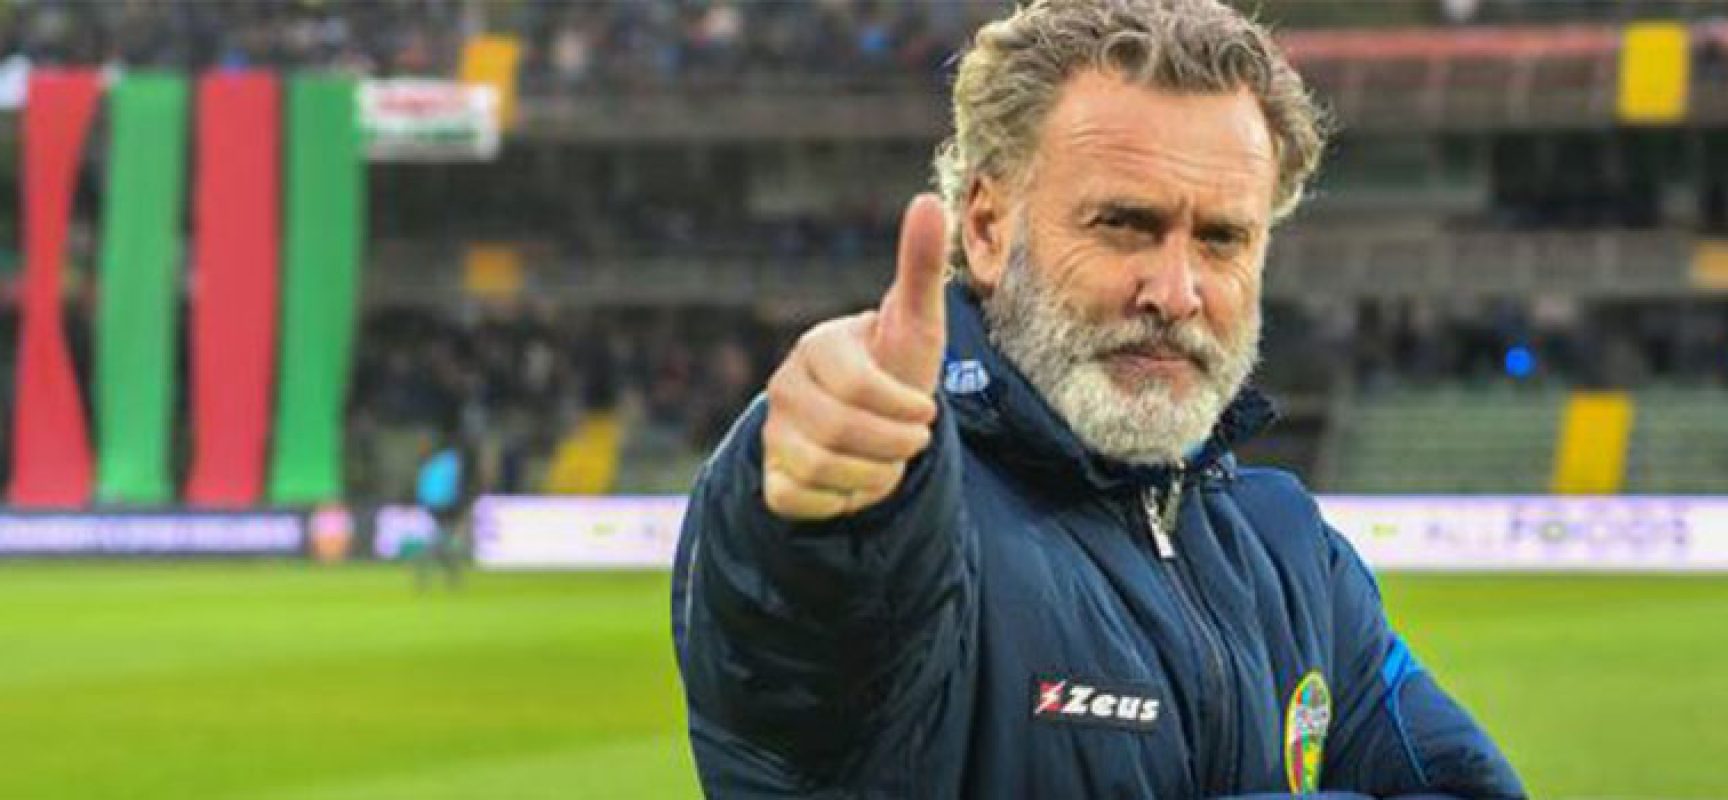 Ufficiale, Sandro Pochesci è il nuovo tecnico del Bisceglie Calcio